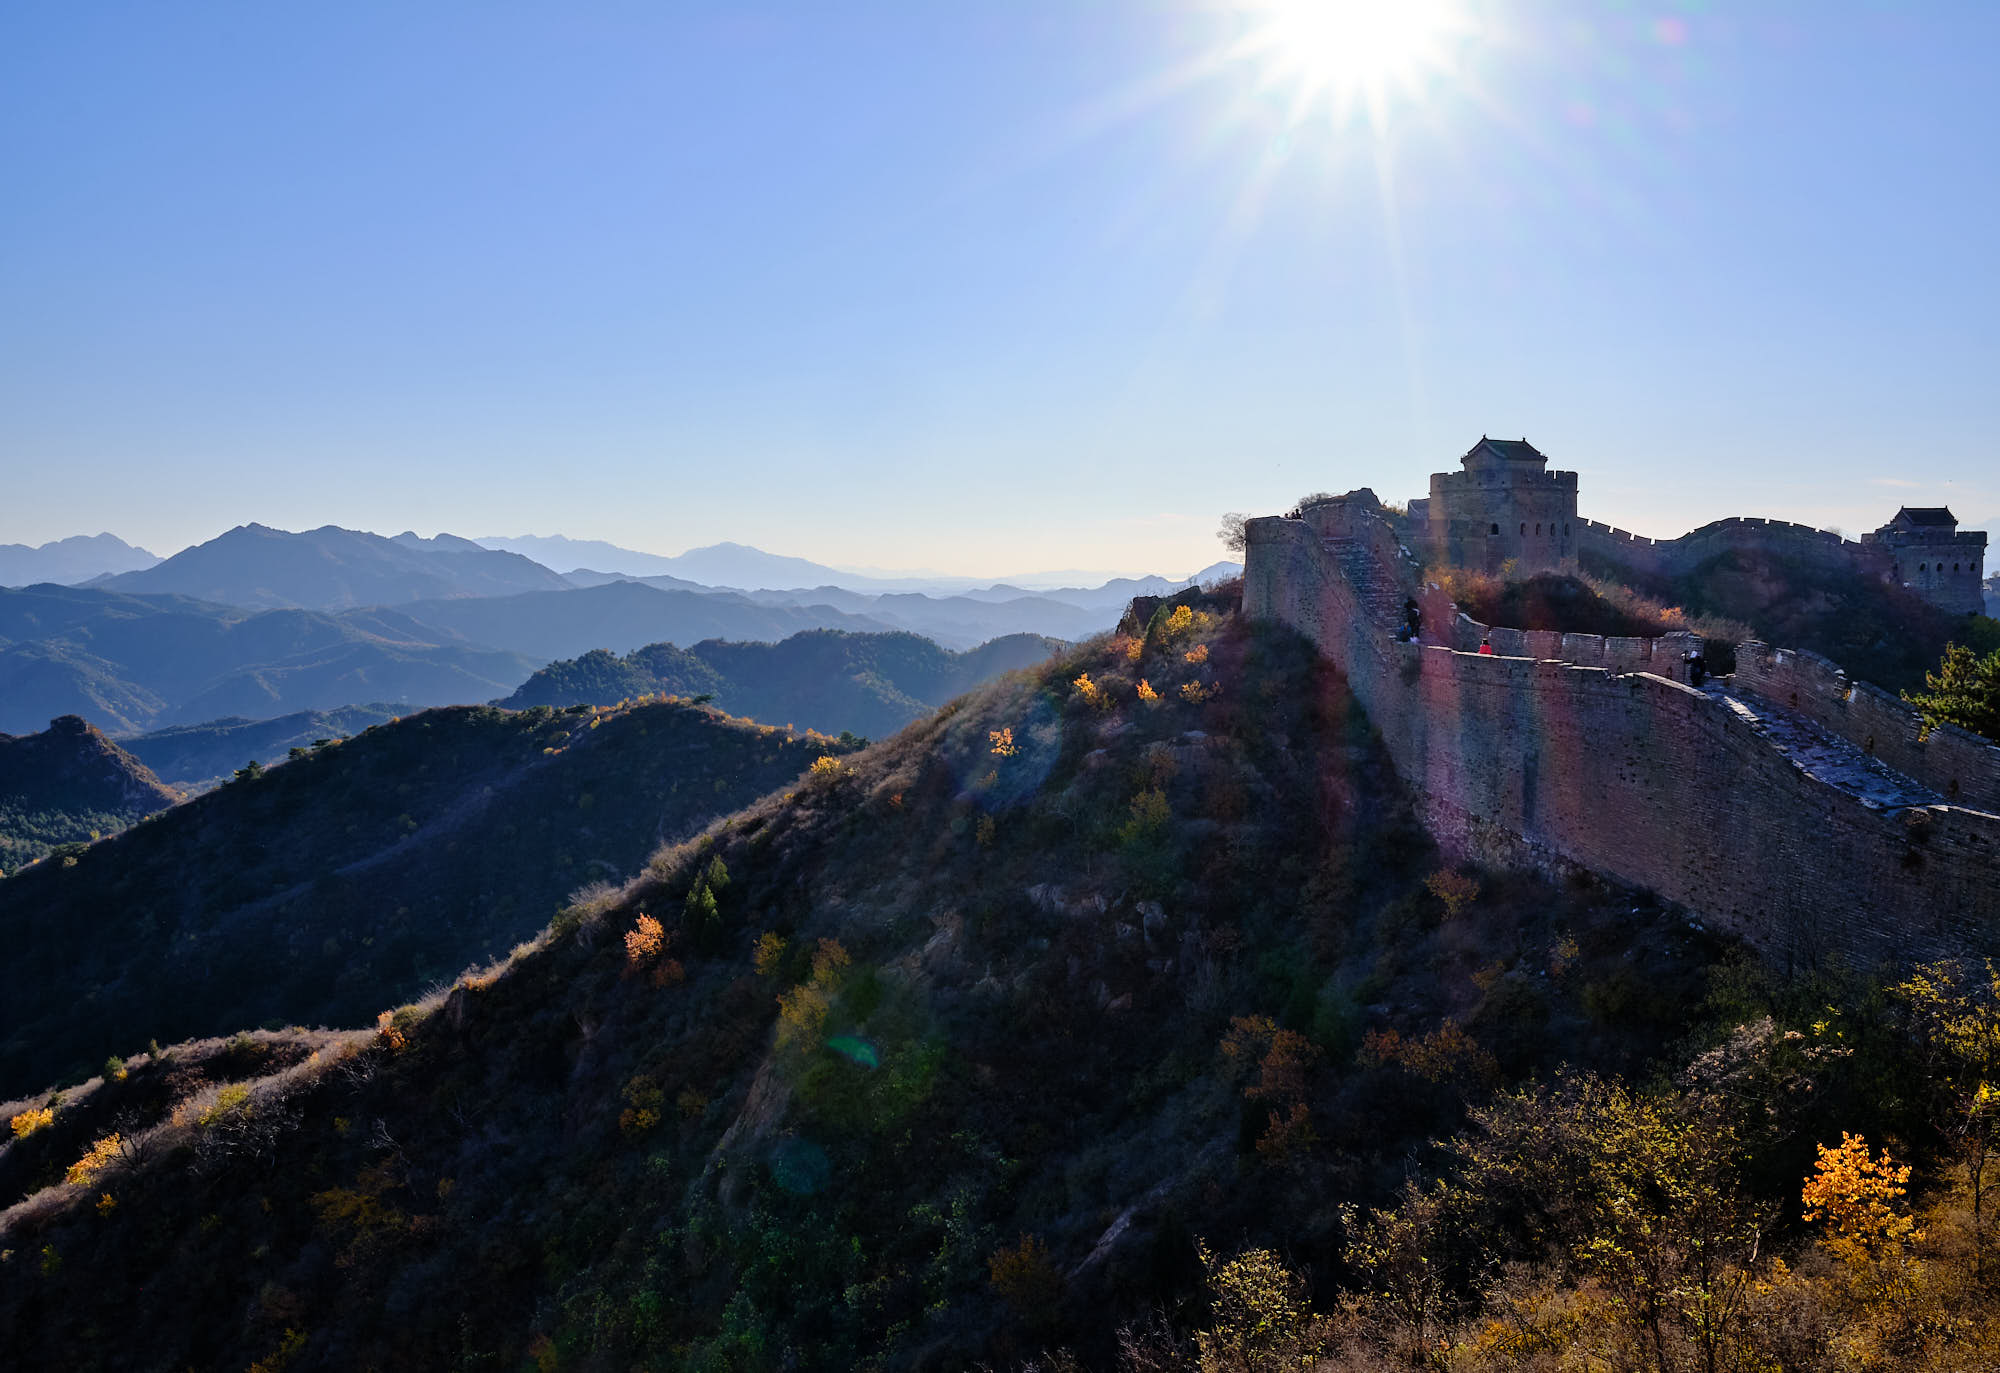 Jinshanling Great Wall of China at sunset